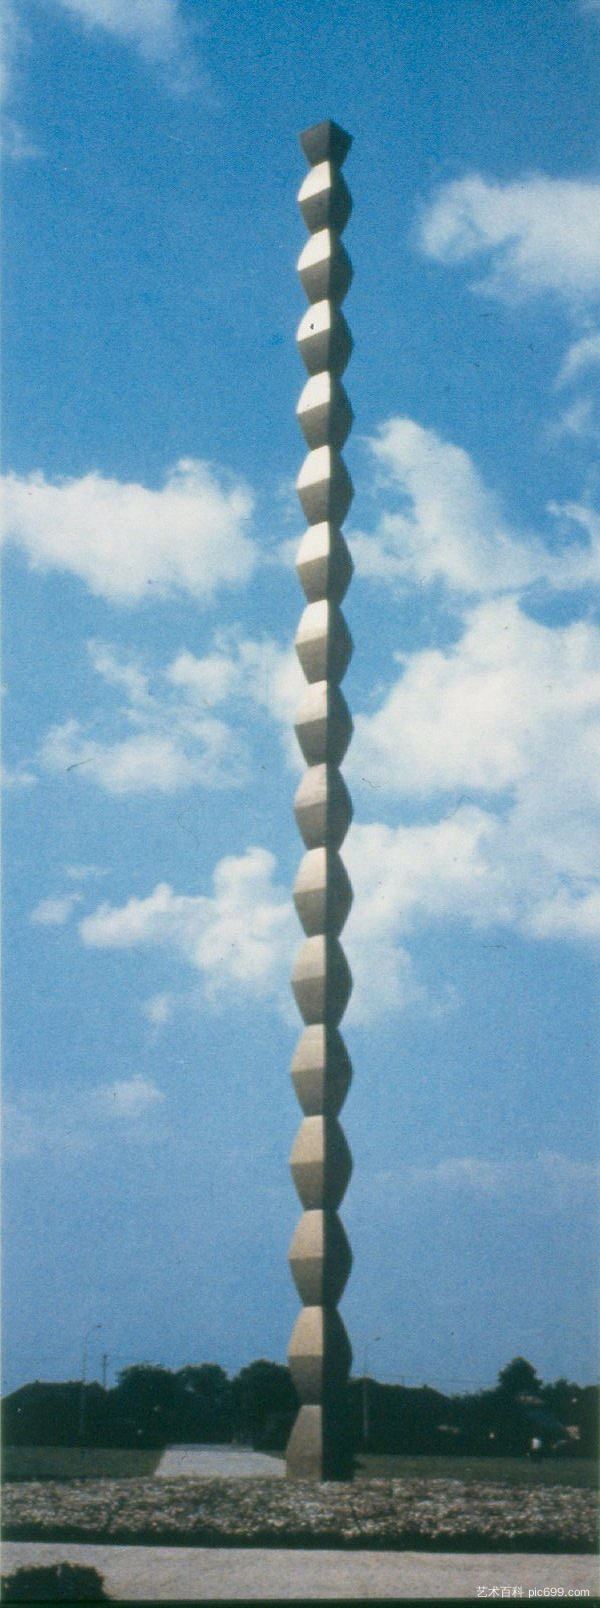 无尽的柱子 The Endless Column (1937)，康斯坦丁·布朗库西